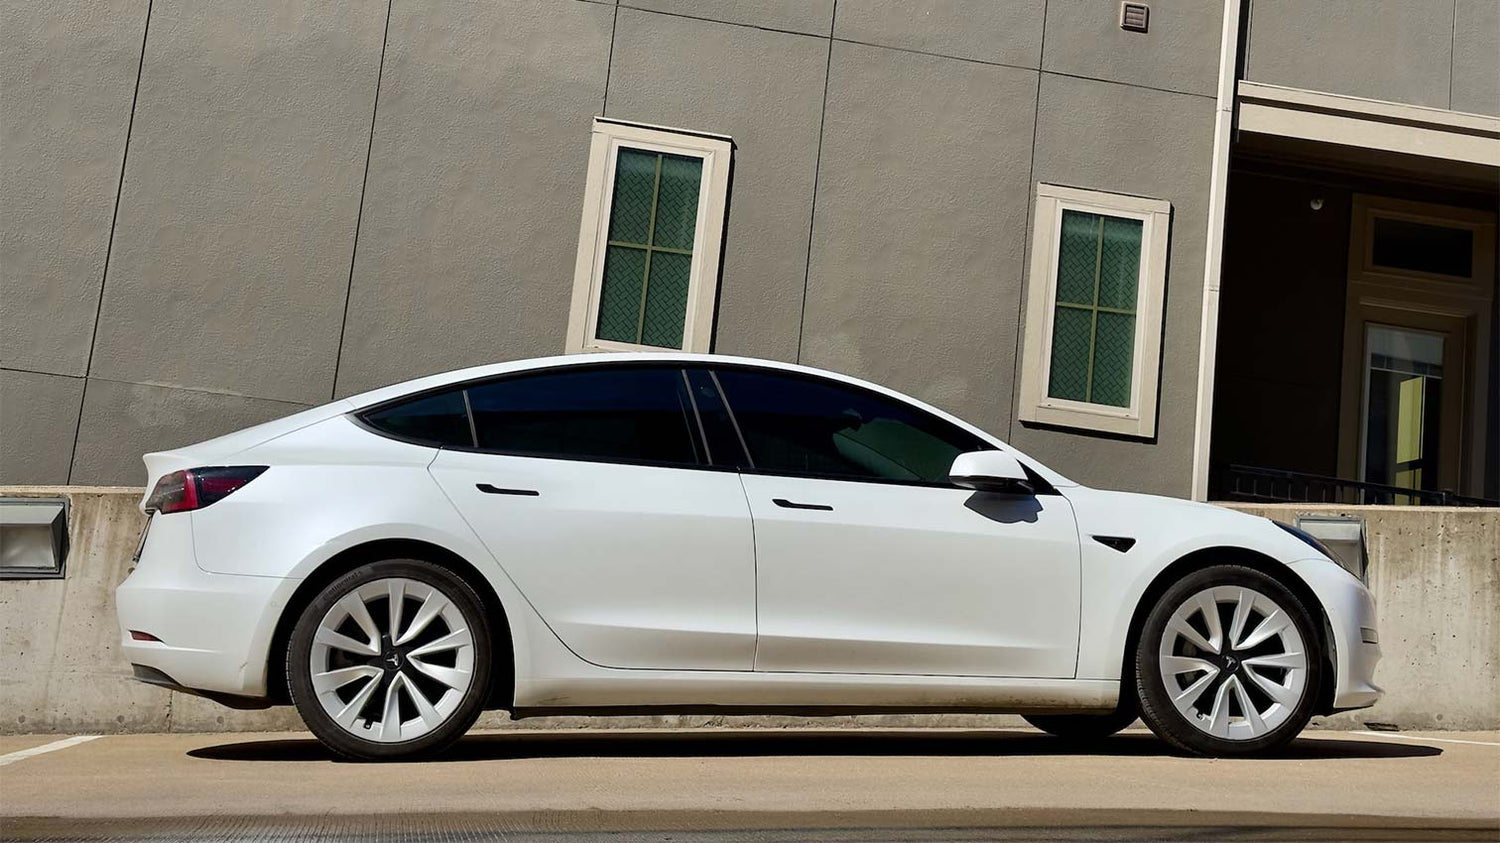 Mehr Tesla-Reichweite mit diesen Tipps und Fahrtechniken